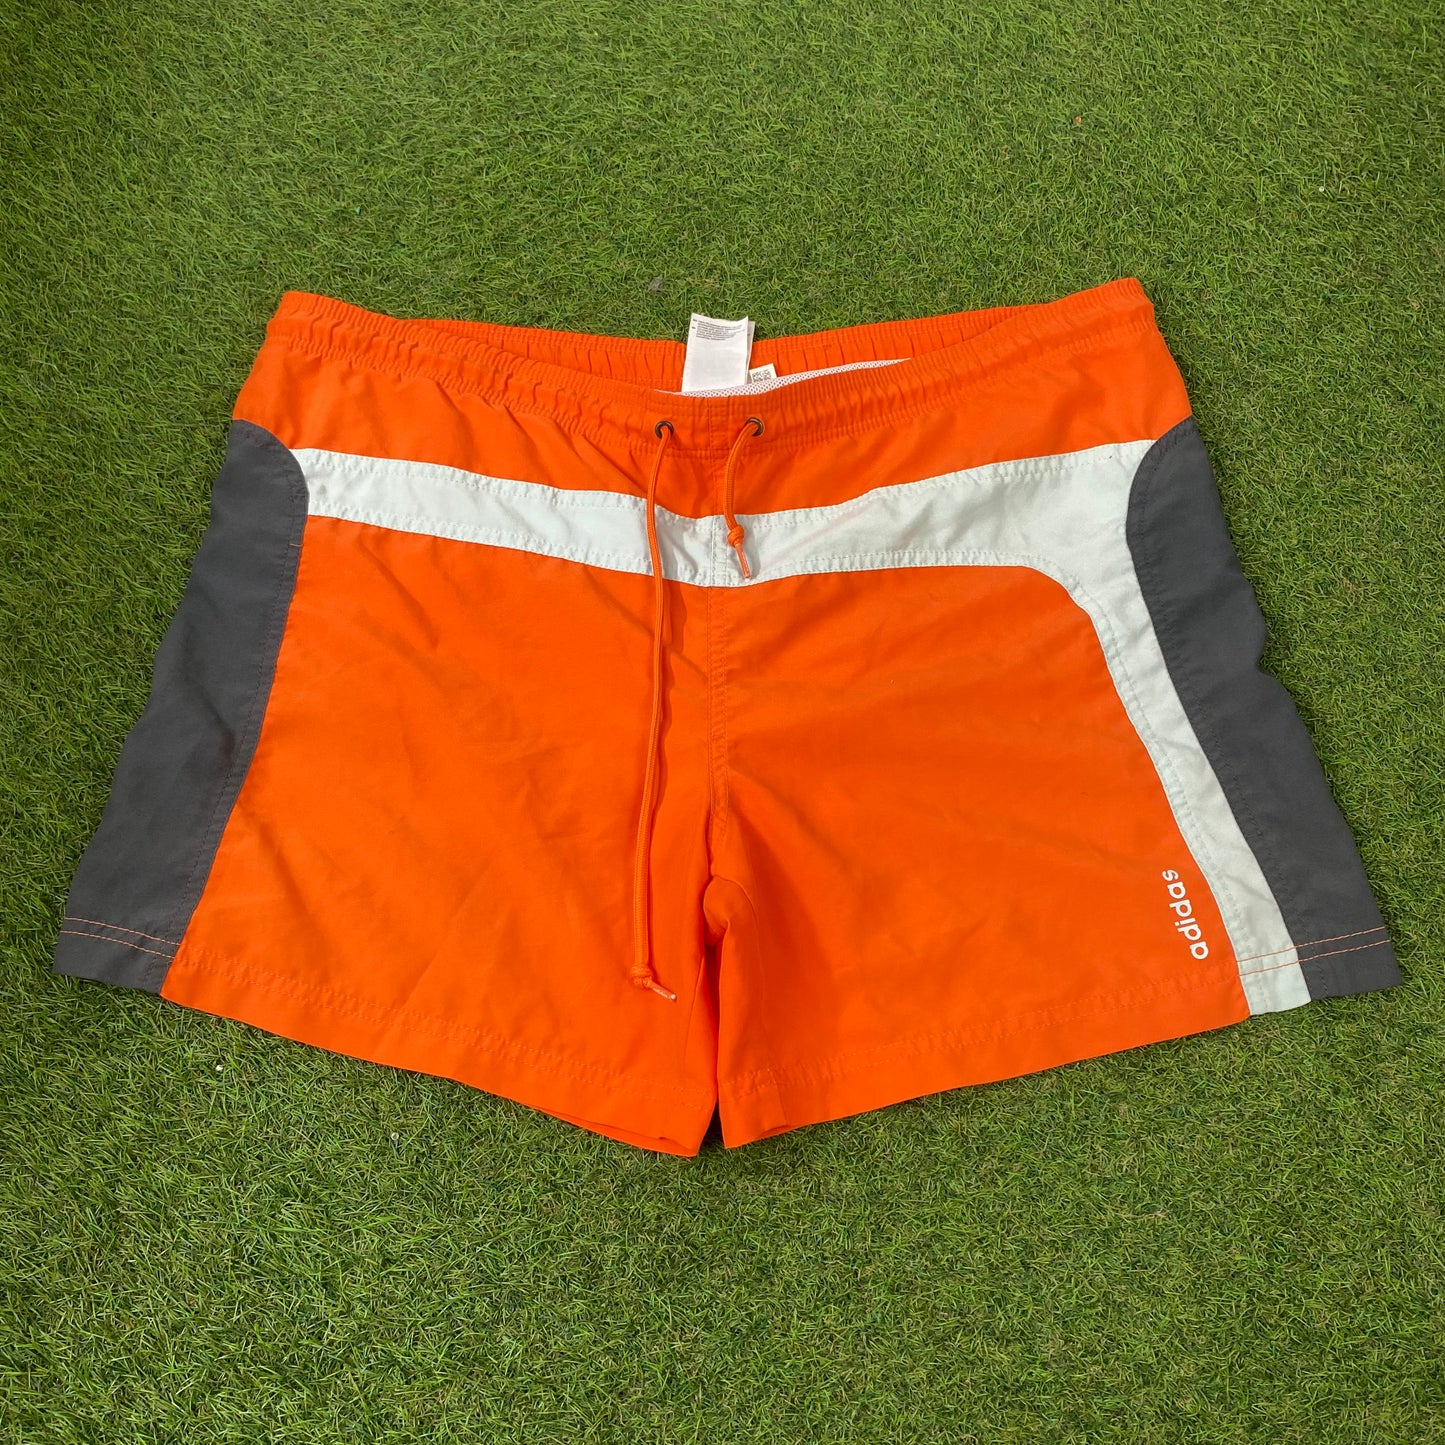 90s Adidas Swim Shorts Orange Large